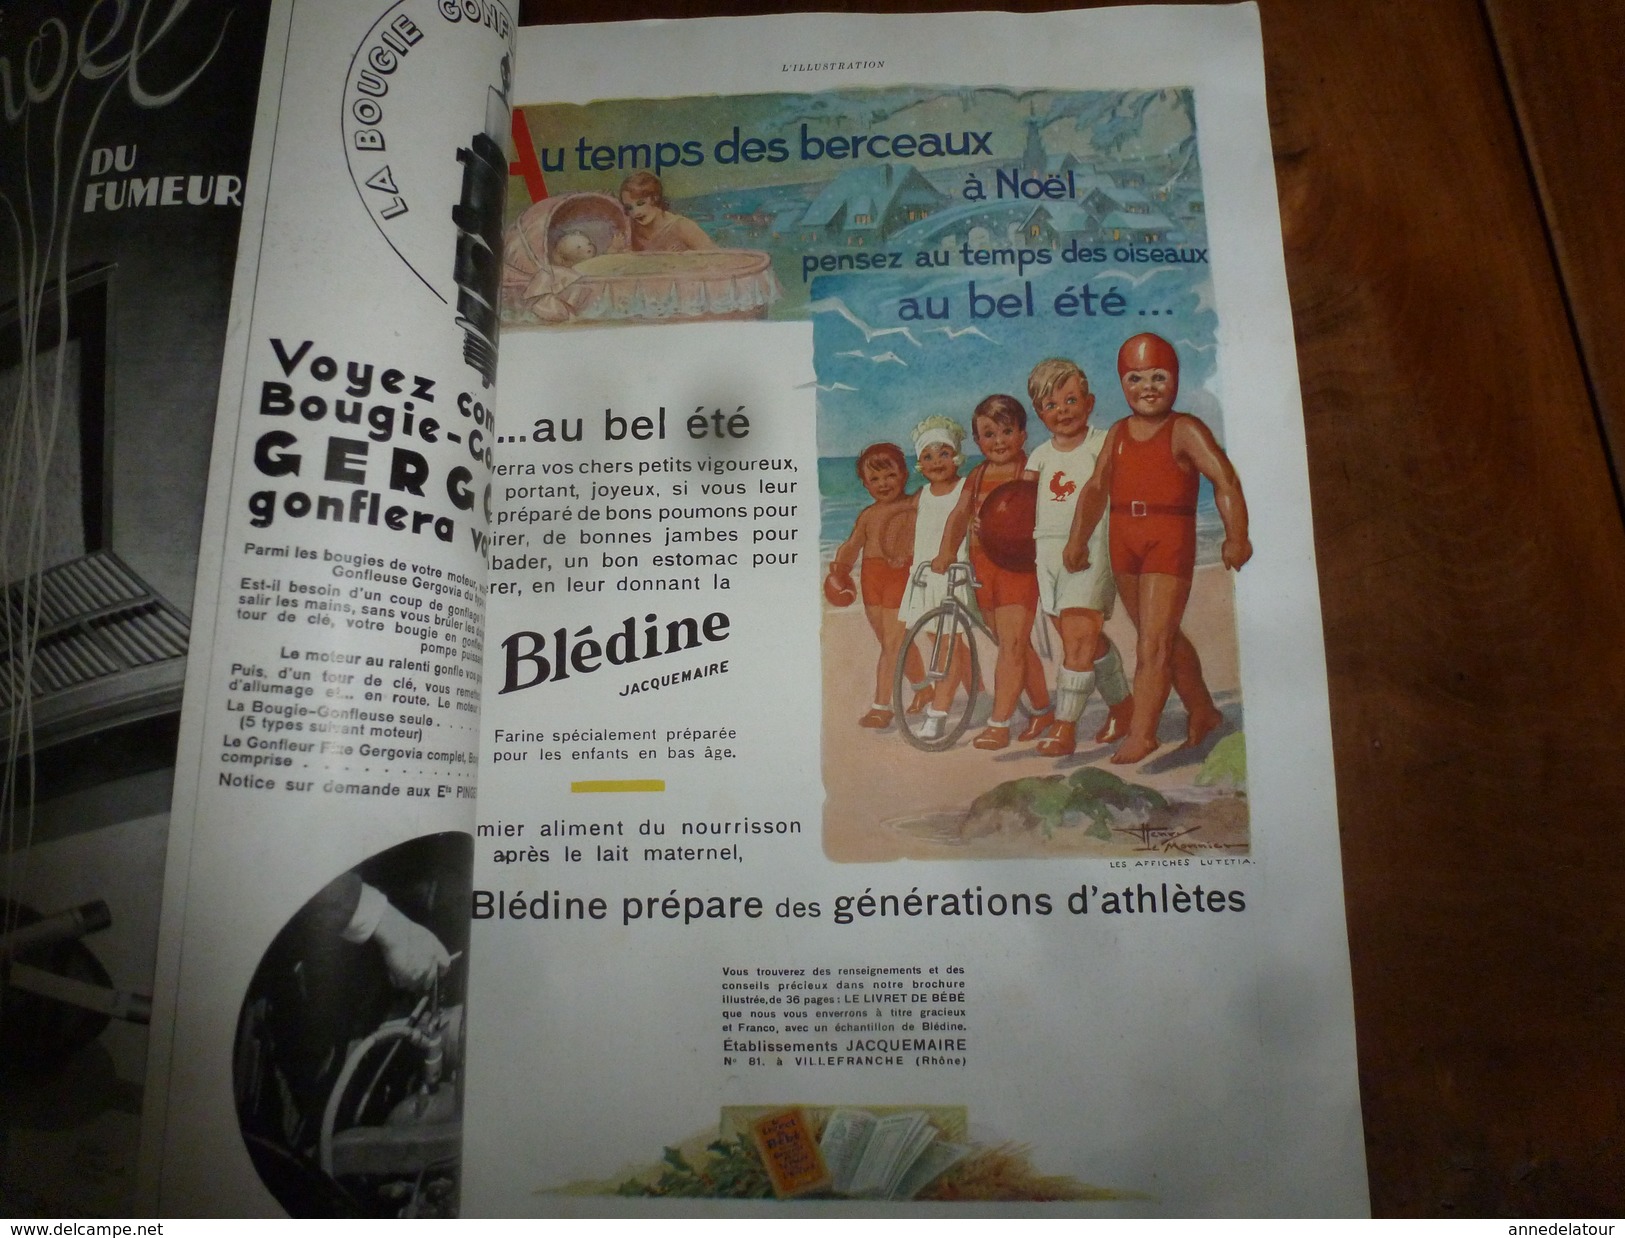 1930 SPECIAL  NOËL   L'ILLUSTRATION: Evolution artistique de la reliure; Nombreuses publicités pleine page,dont couleurs